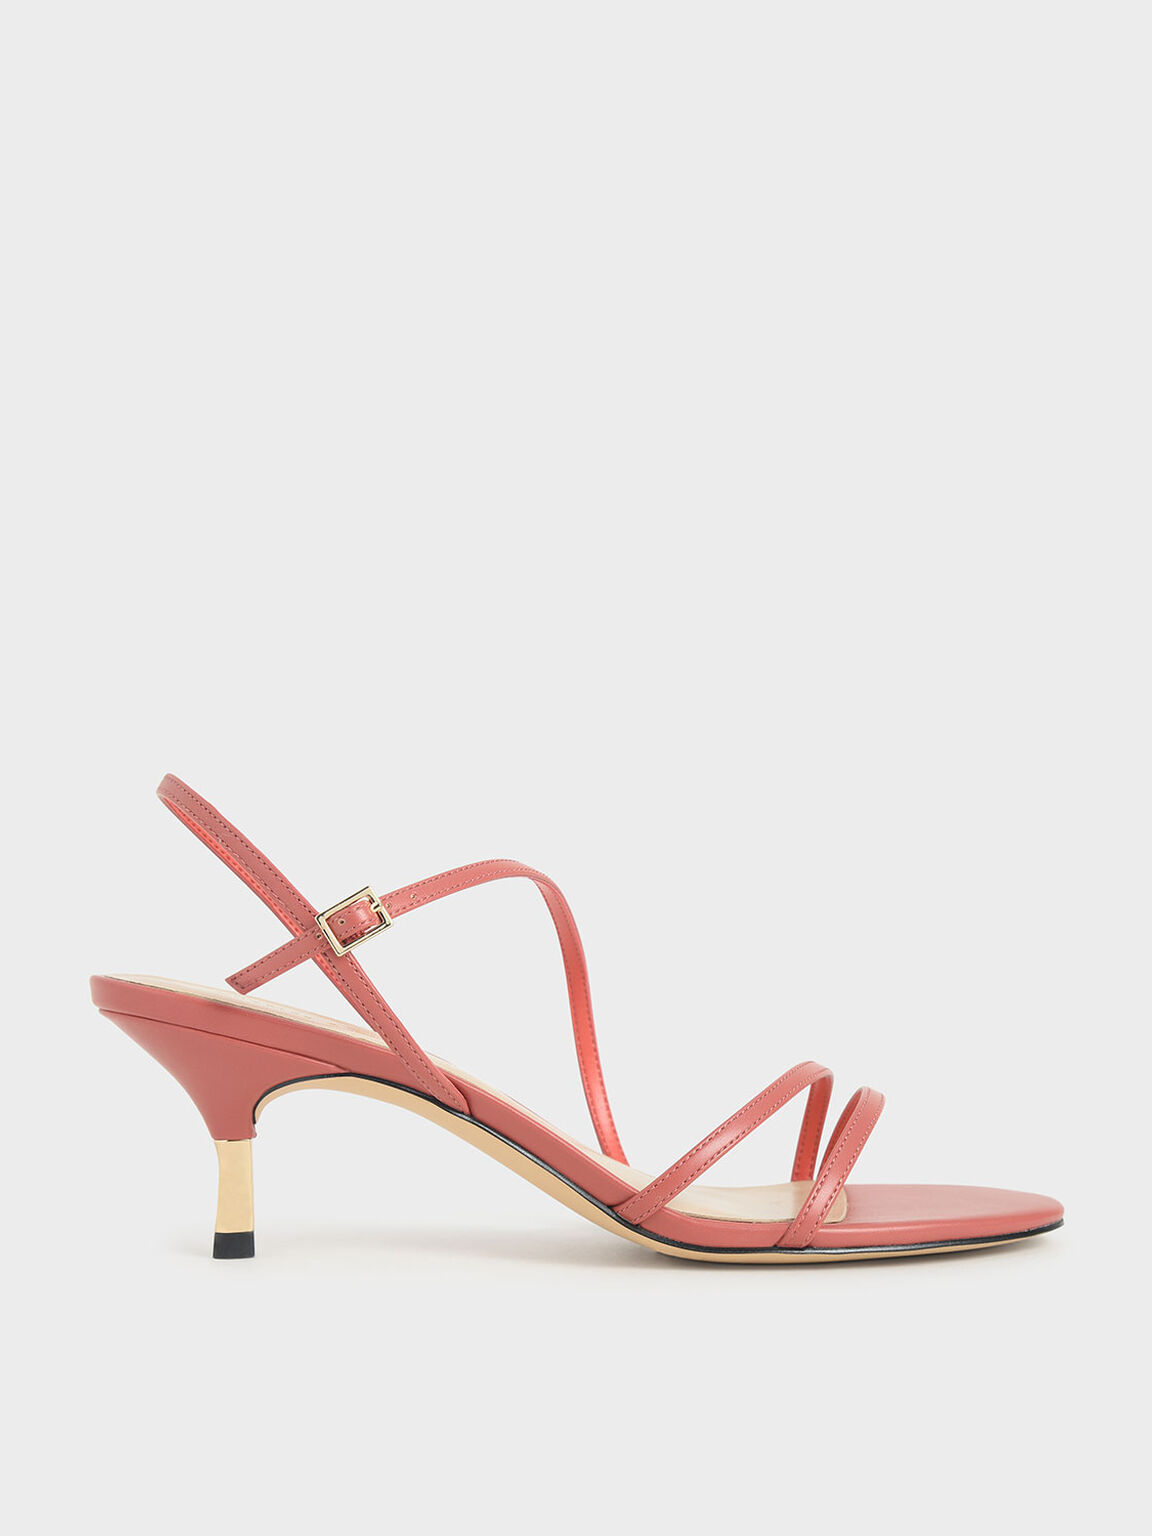 Strappy Metallic Heel Sandals, Coral Pink, hi-res